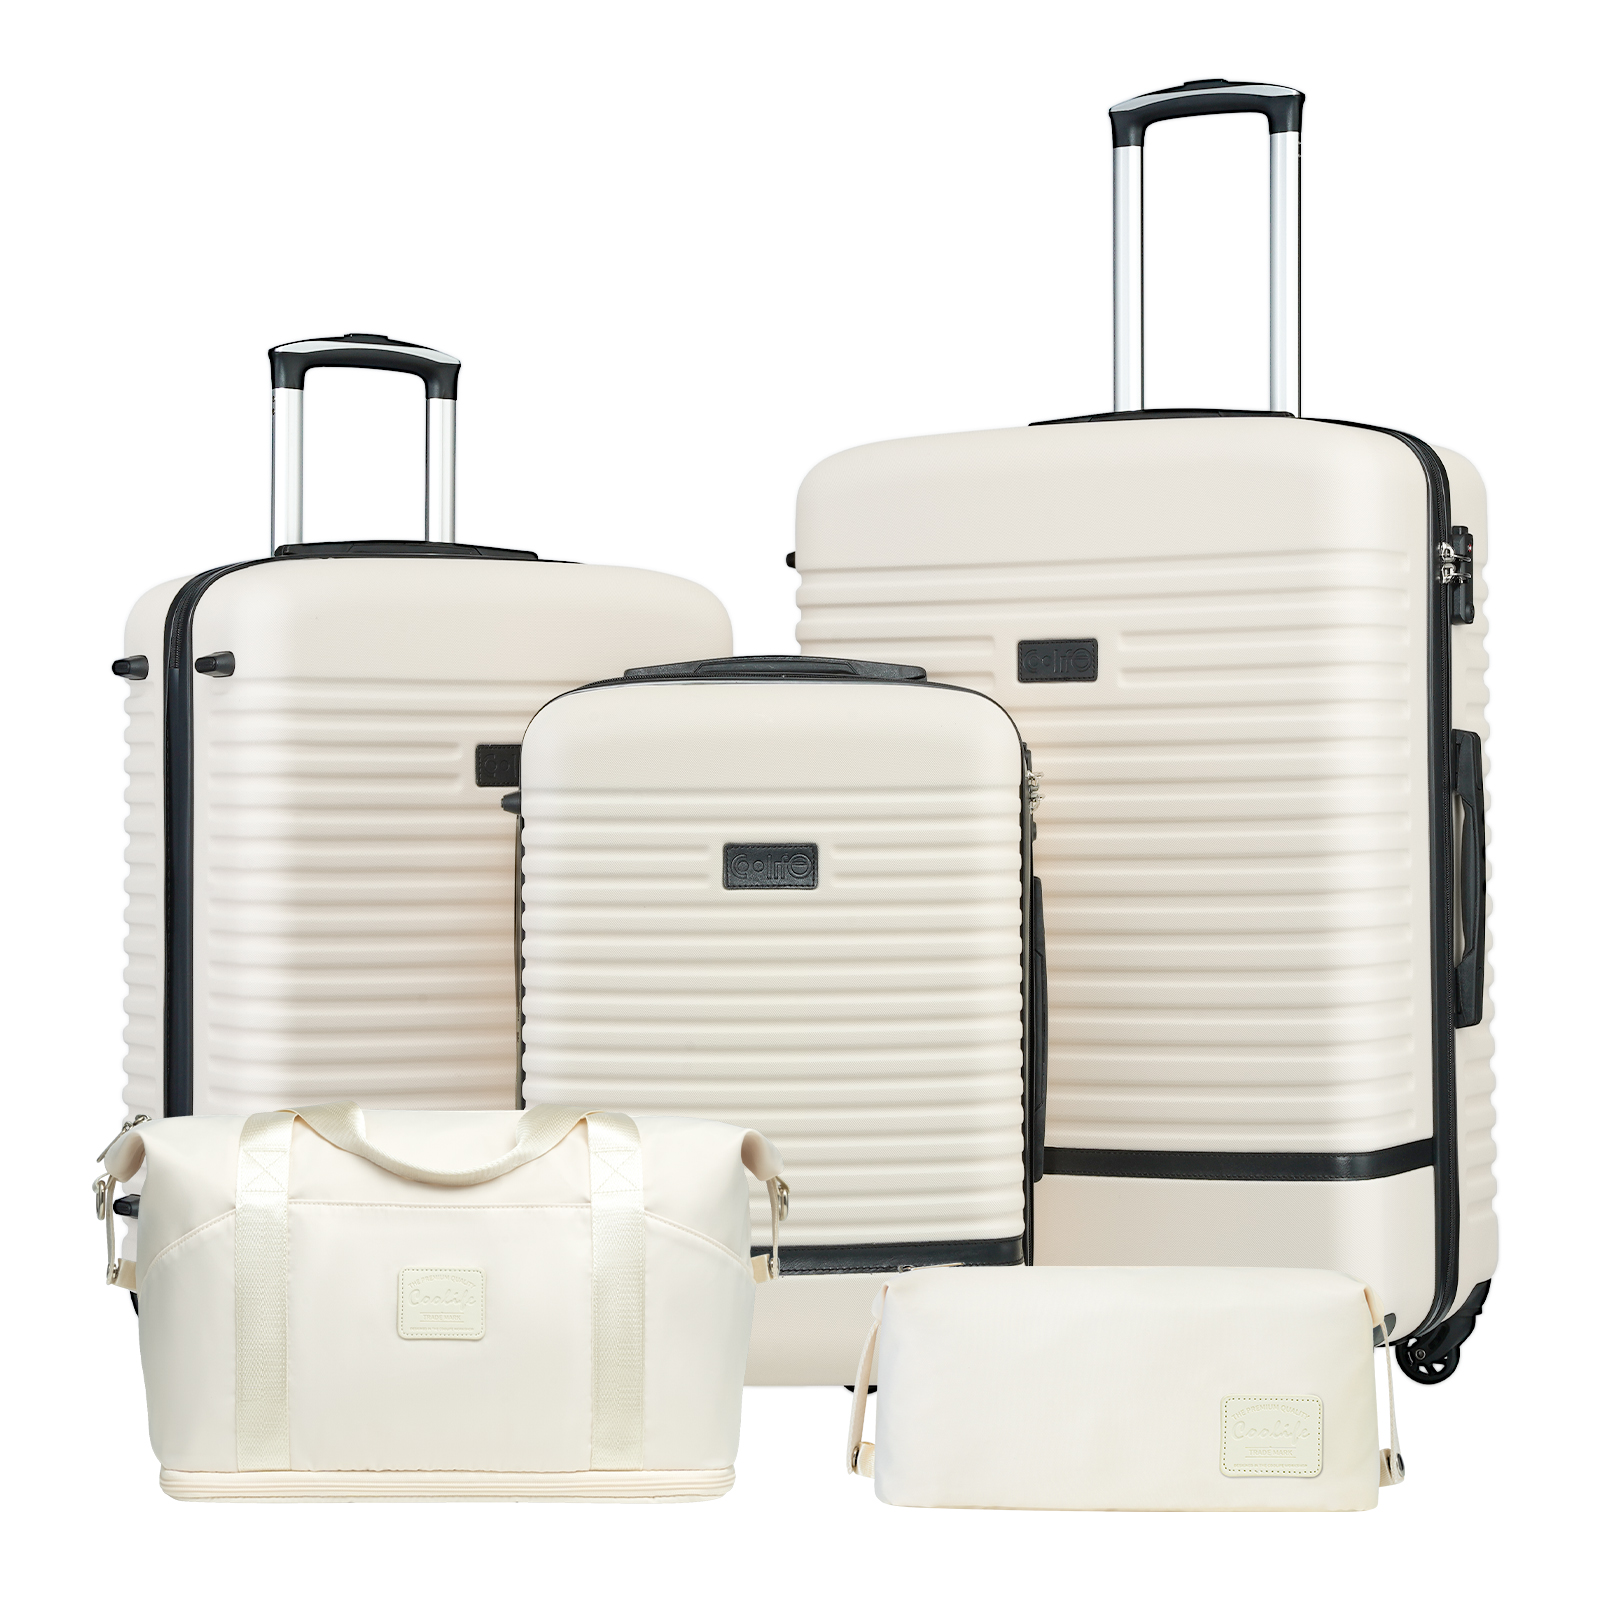 Coolife Luggage Set Suitcase Set Carry On Hardside Luggage TSA Lock Spinner Wheels Hardshell Lightweight Luggage Set